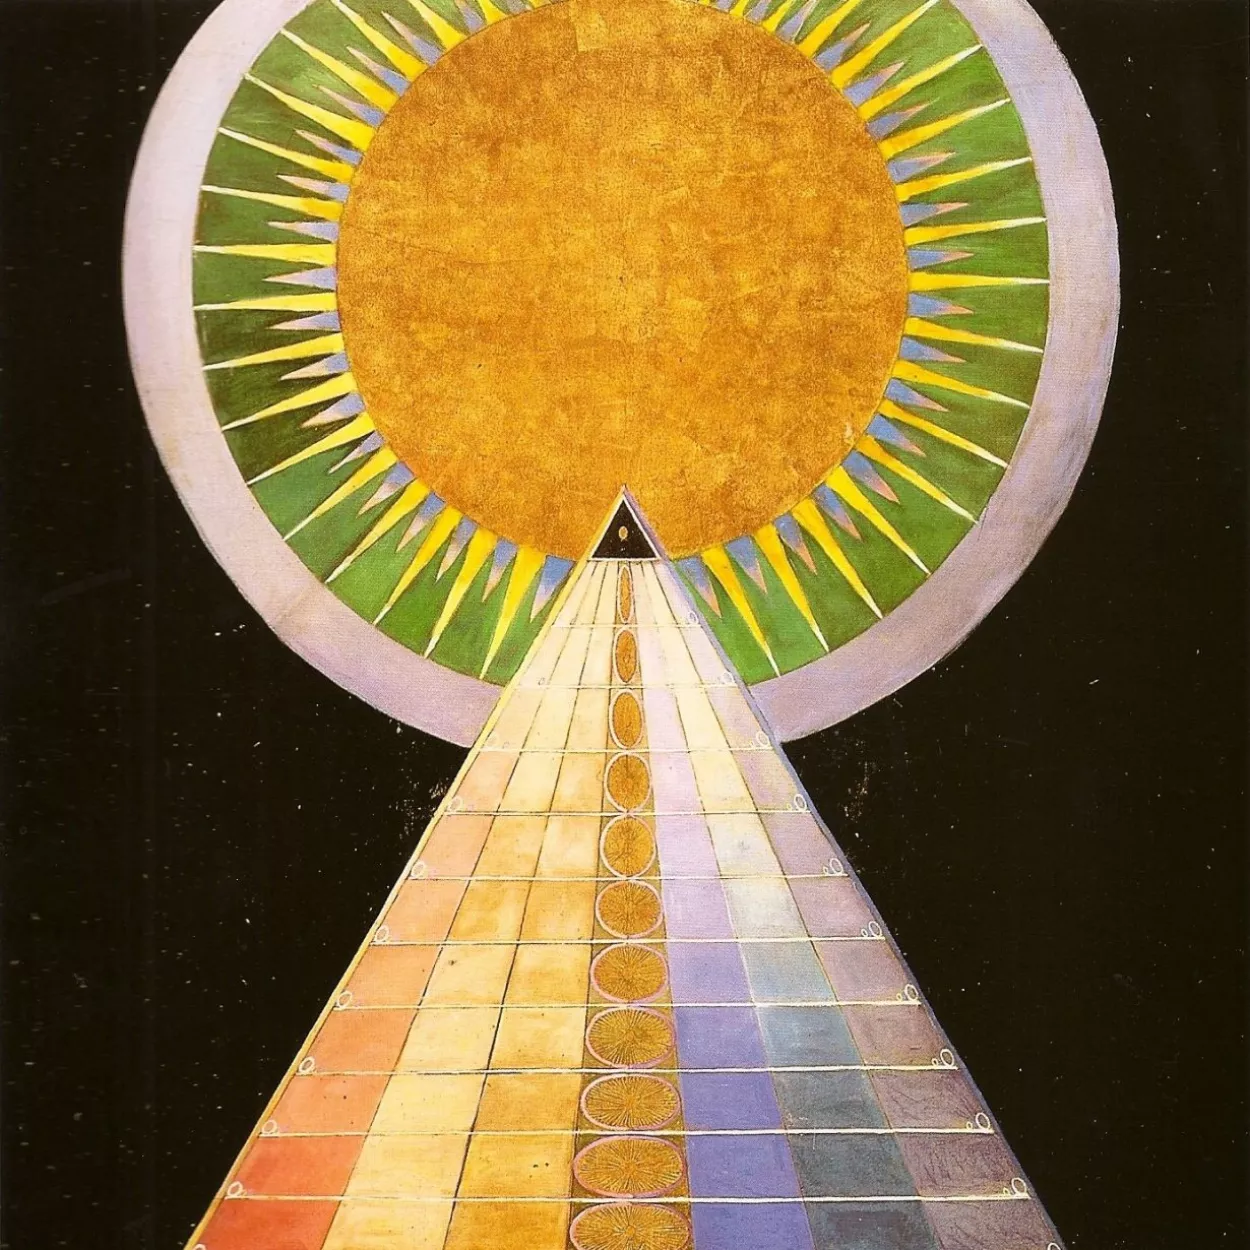 Hilma af Klimt pyramid